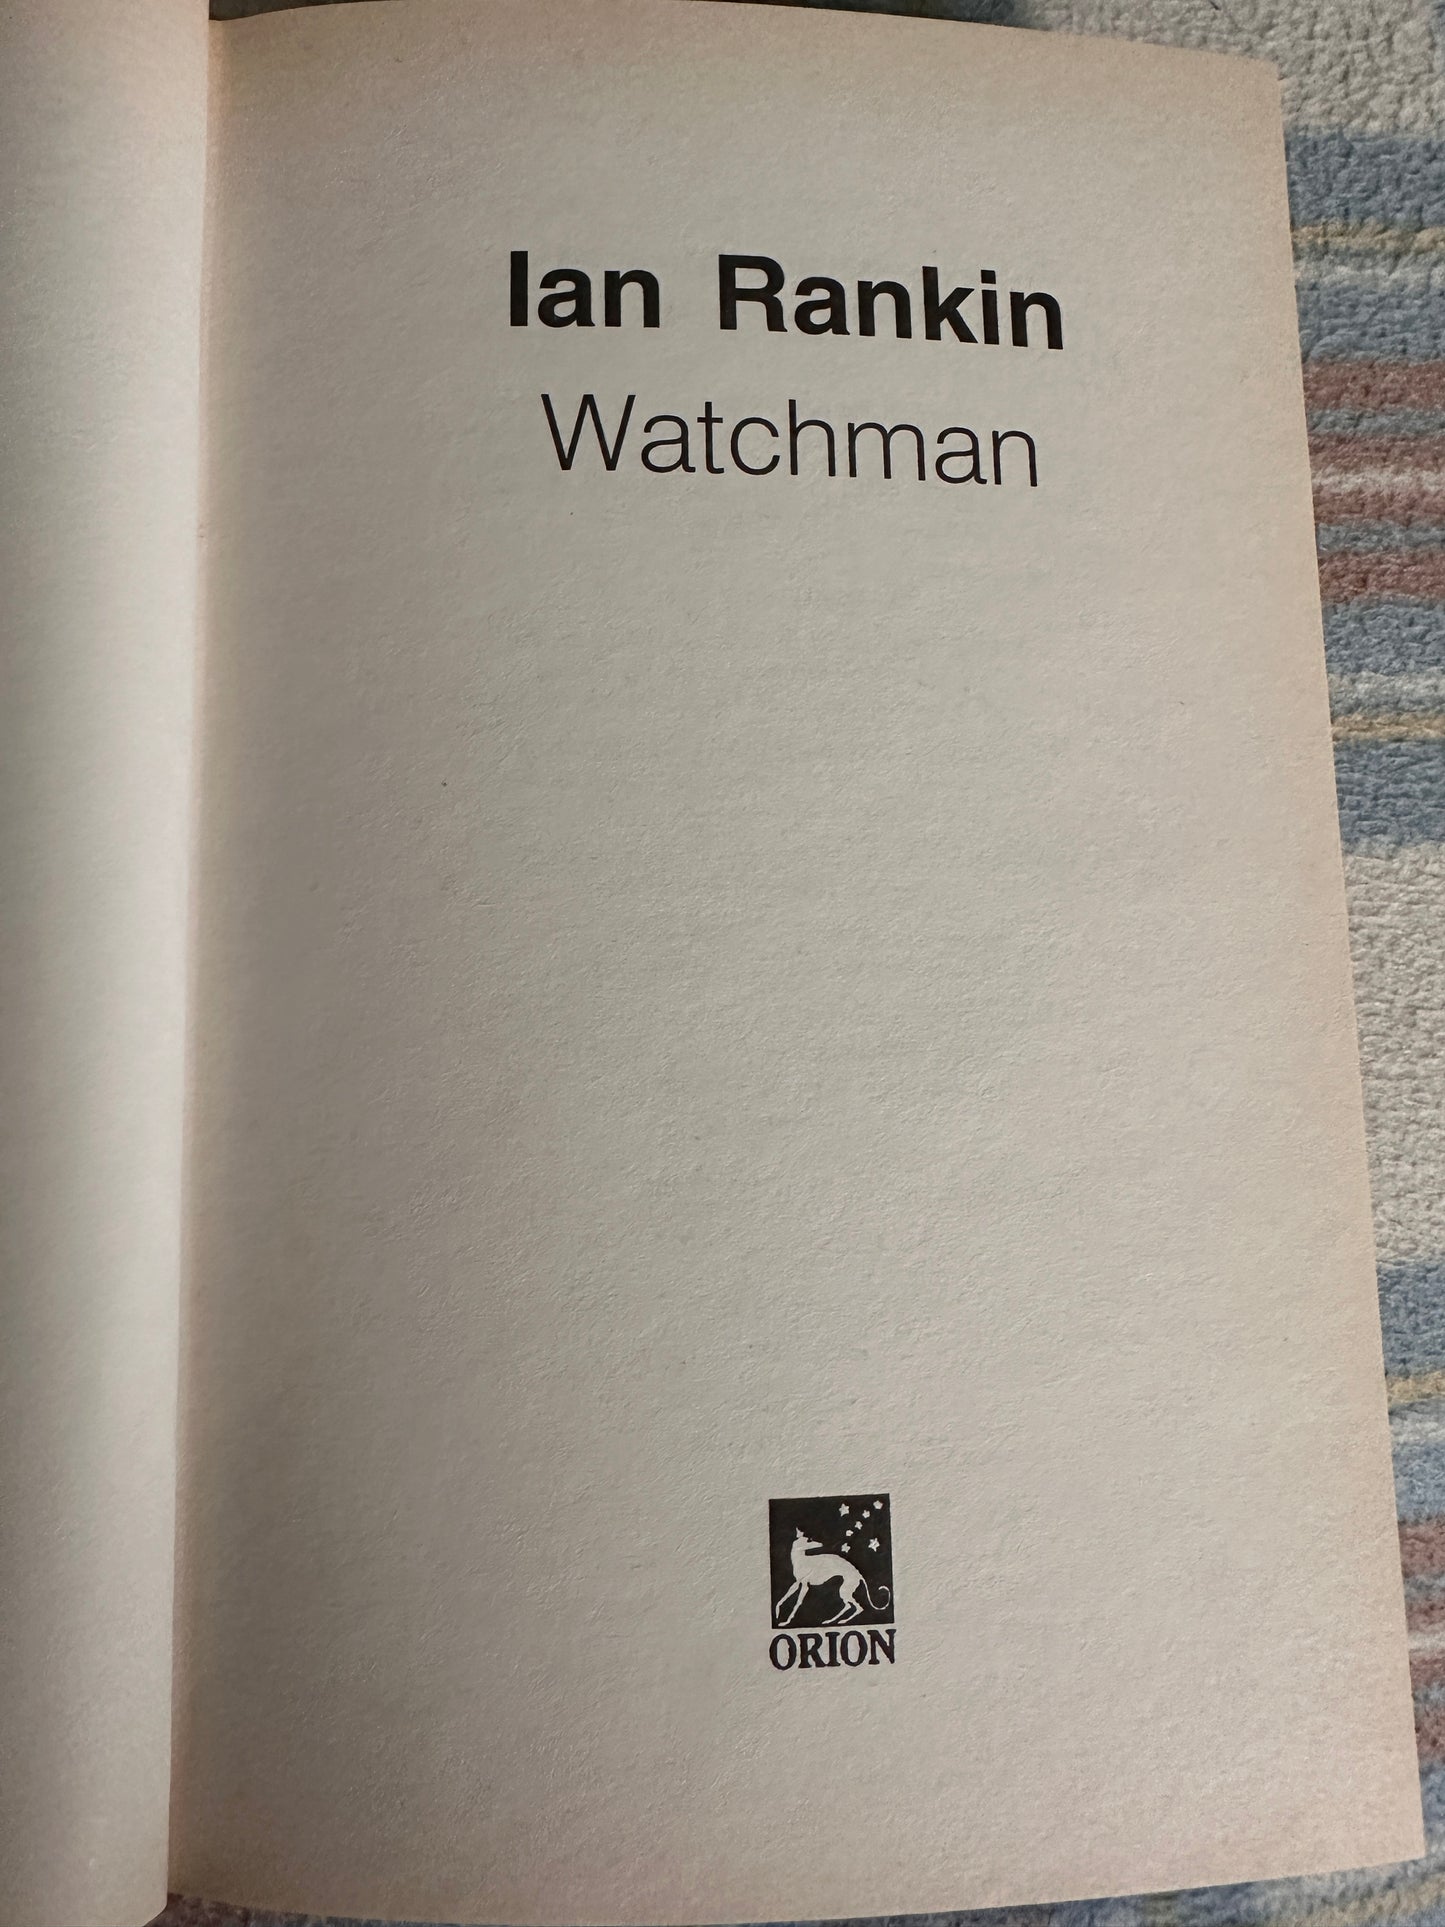 2003*1st reissue* Watchman - Ian Rankin(Orion)